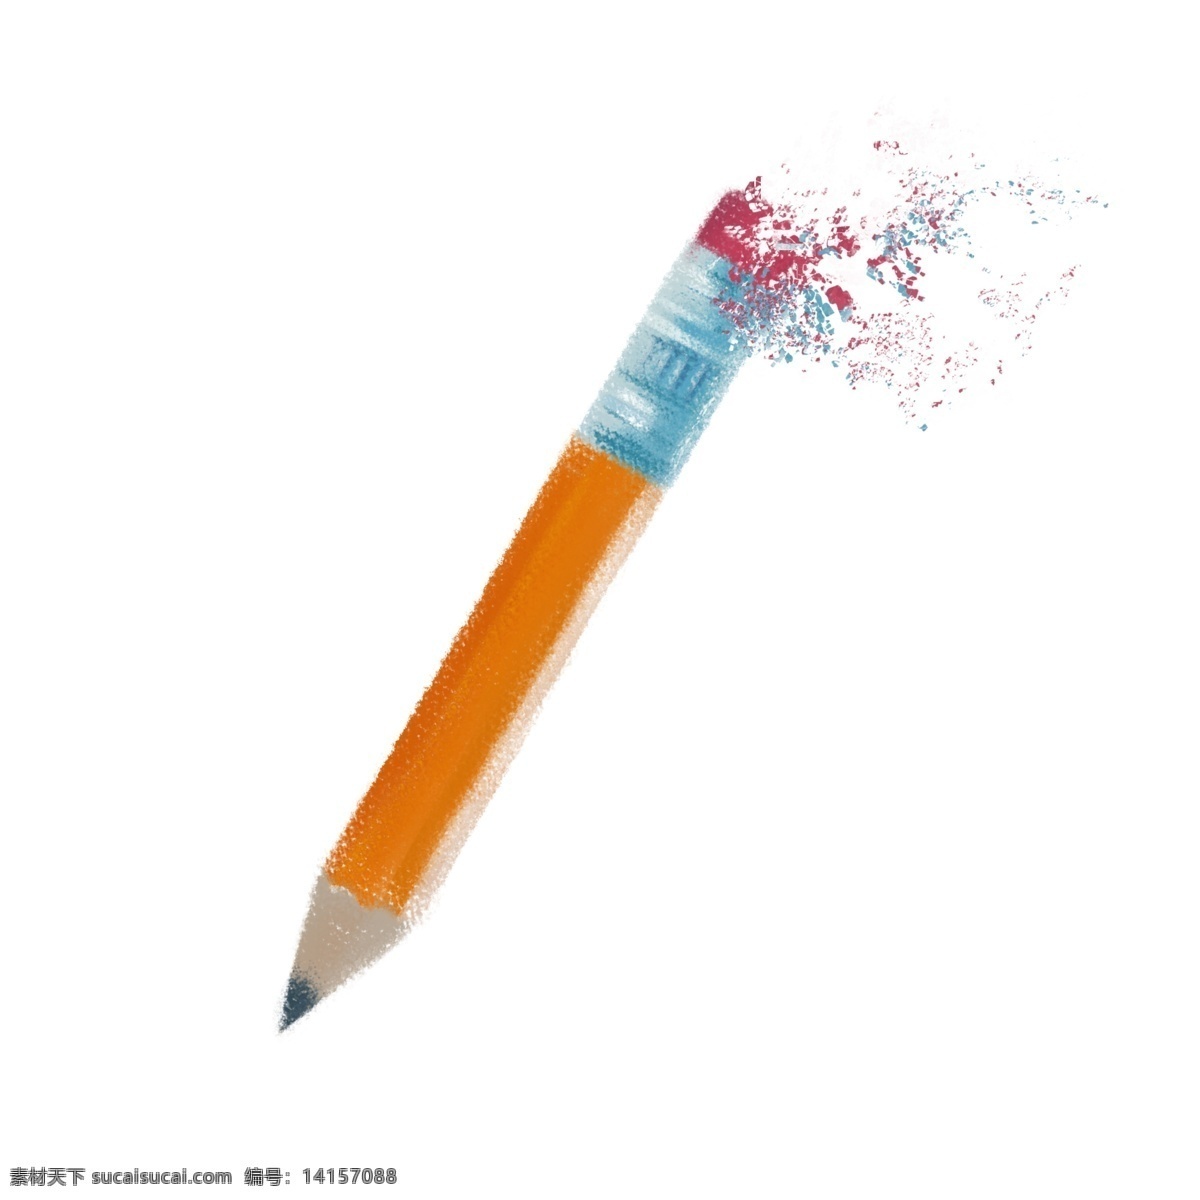 文具用品 黄色 破碎 铅笔 儿童文具用品 不 带 橡皮 卡通手绘 学习用具 红色铅笔